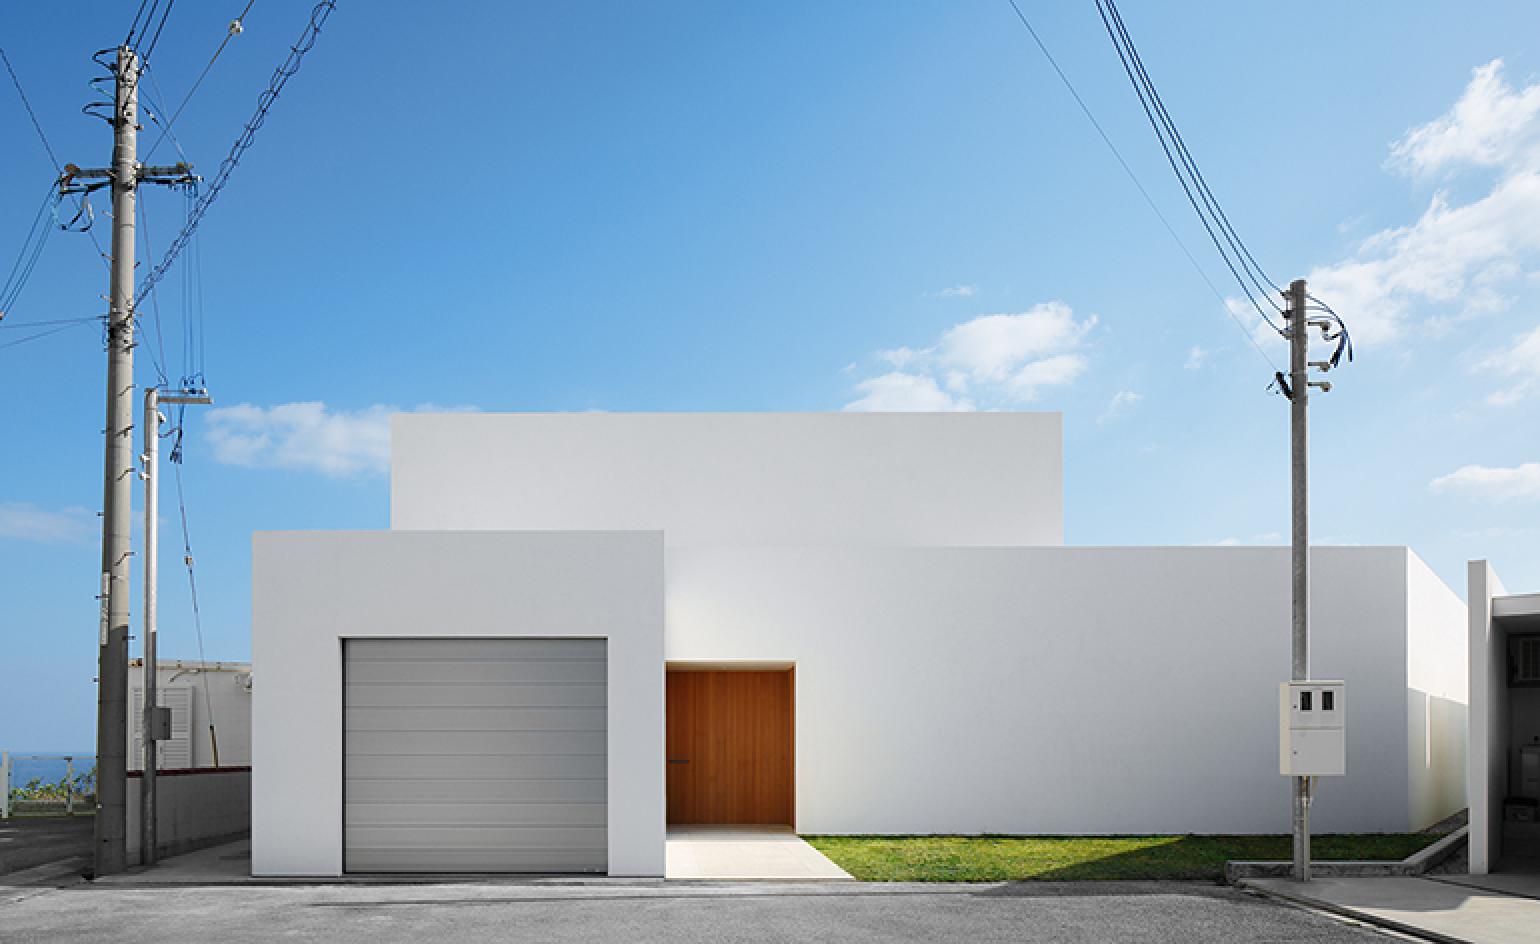 fond d'écran architecture minimaliste,architecture,maison,bâtiment,ciel,ligne électrique aérienne